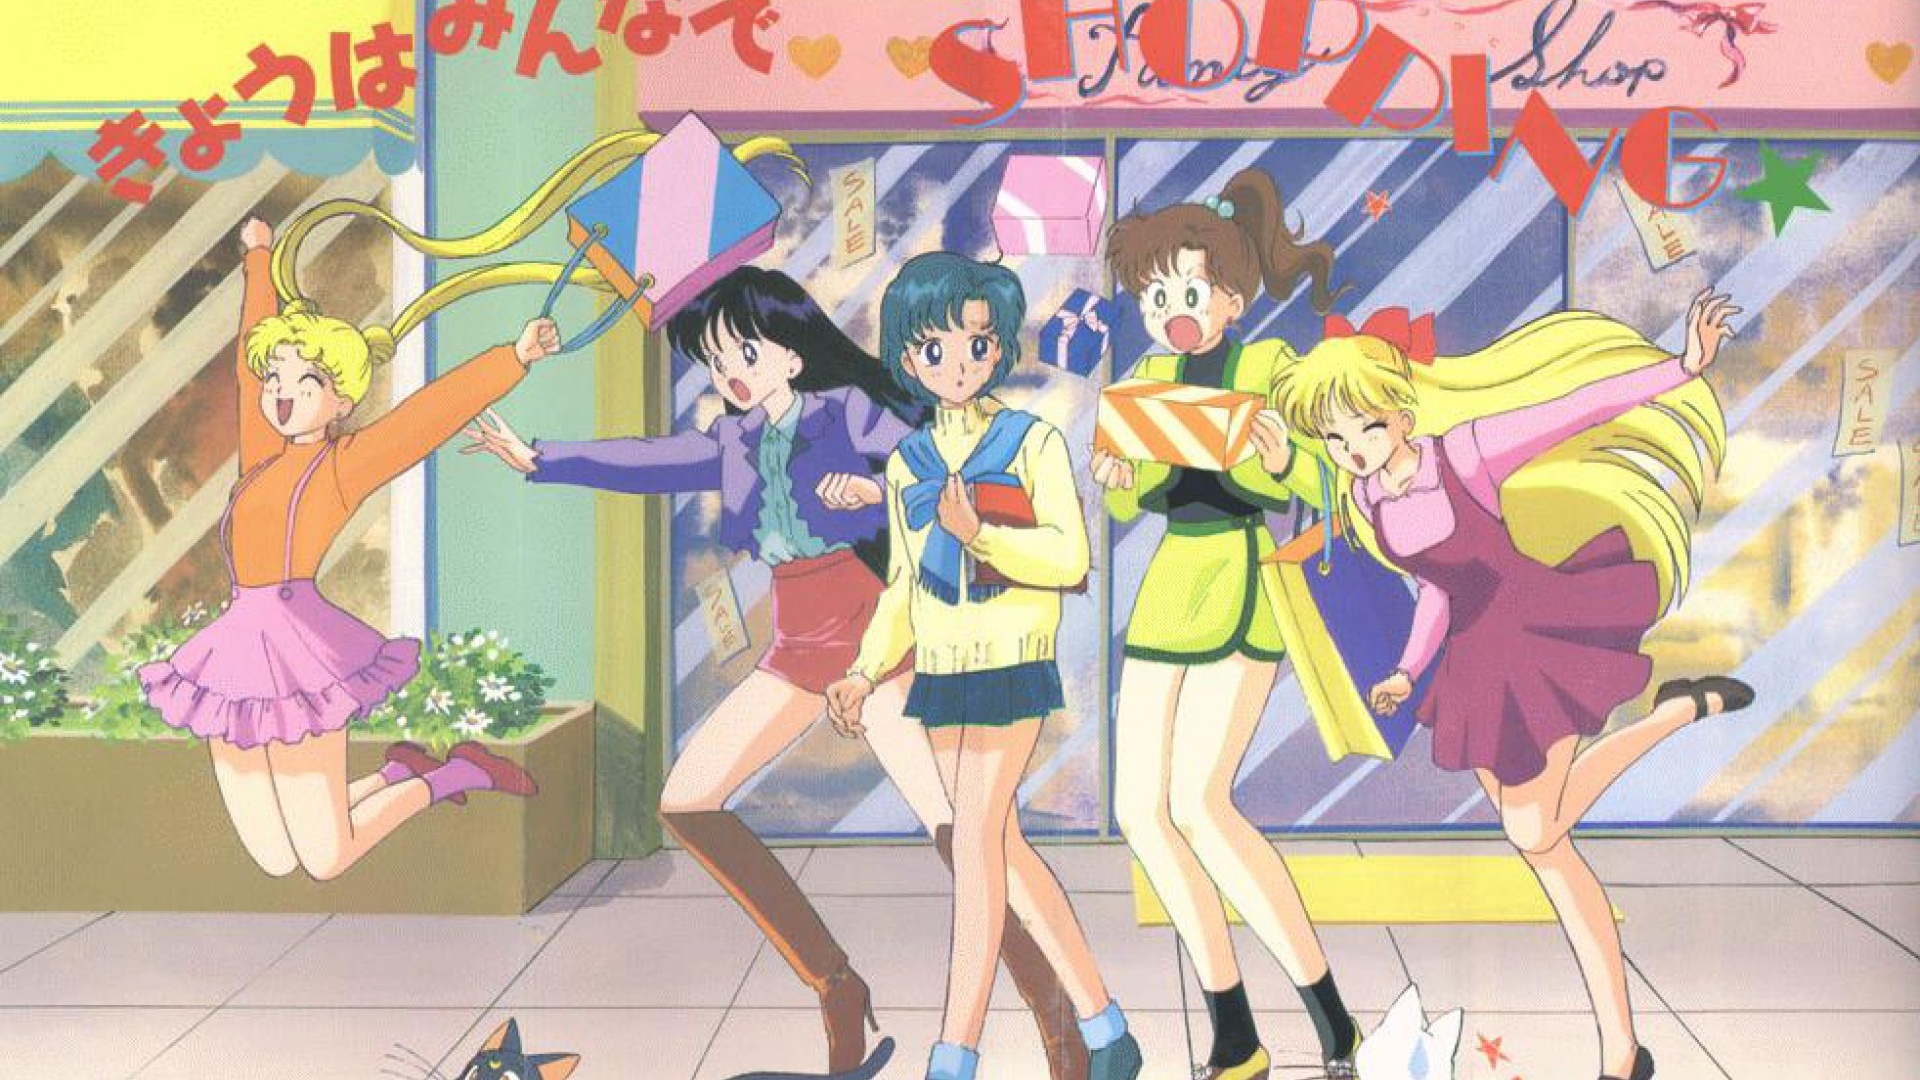 Hãy tải miễn phí hình nền Sailor Moon cho PC và Mac của bạn ngay hôm nay để thêm màu sắc cho màn hình của mình. Những hình ảnh đáng yêu của nhân vật chính sẽ khiến bạn cảm thấy phấn khích và hứng khởi hàng ngày. 